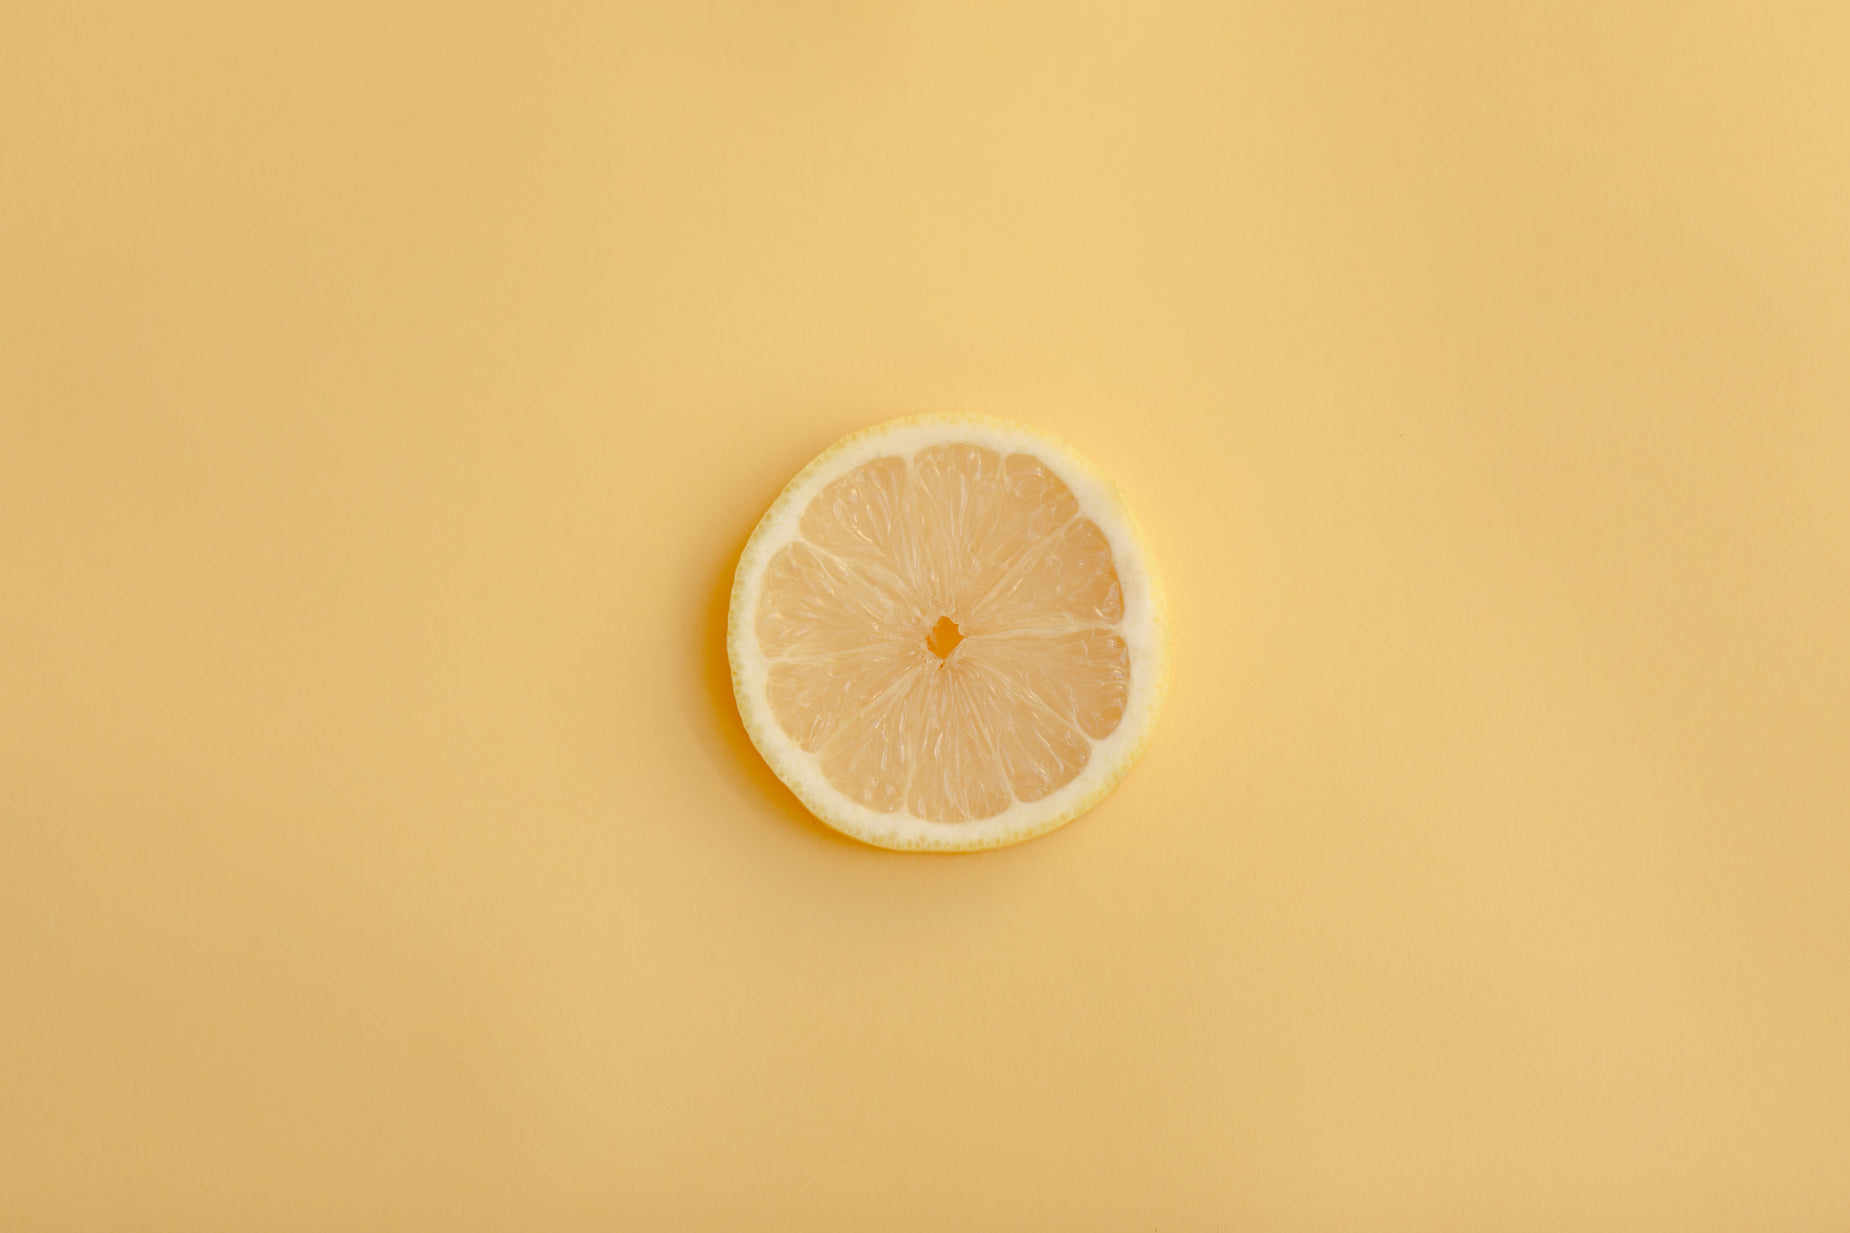 the lemon on the orange is half empty